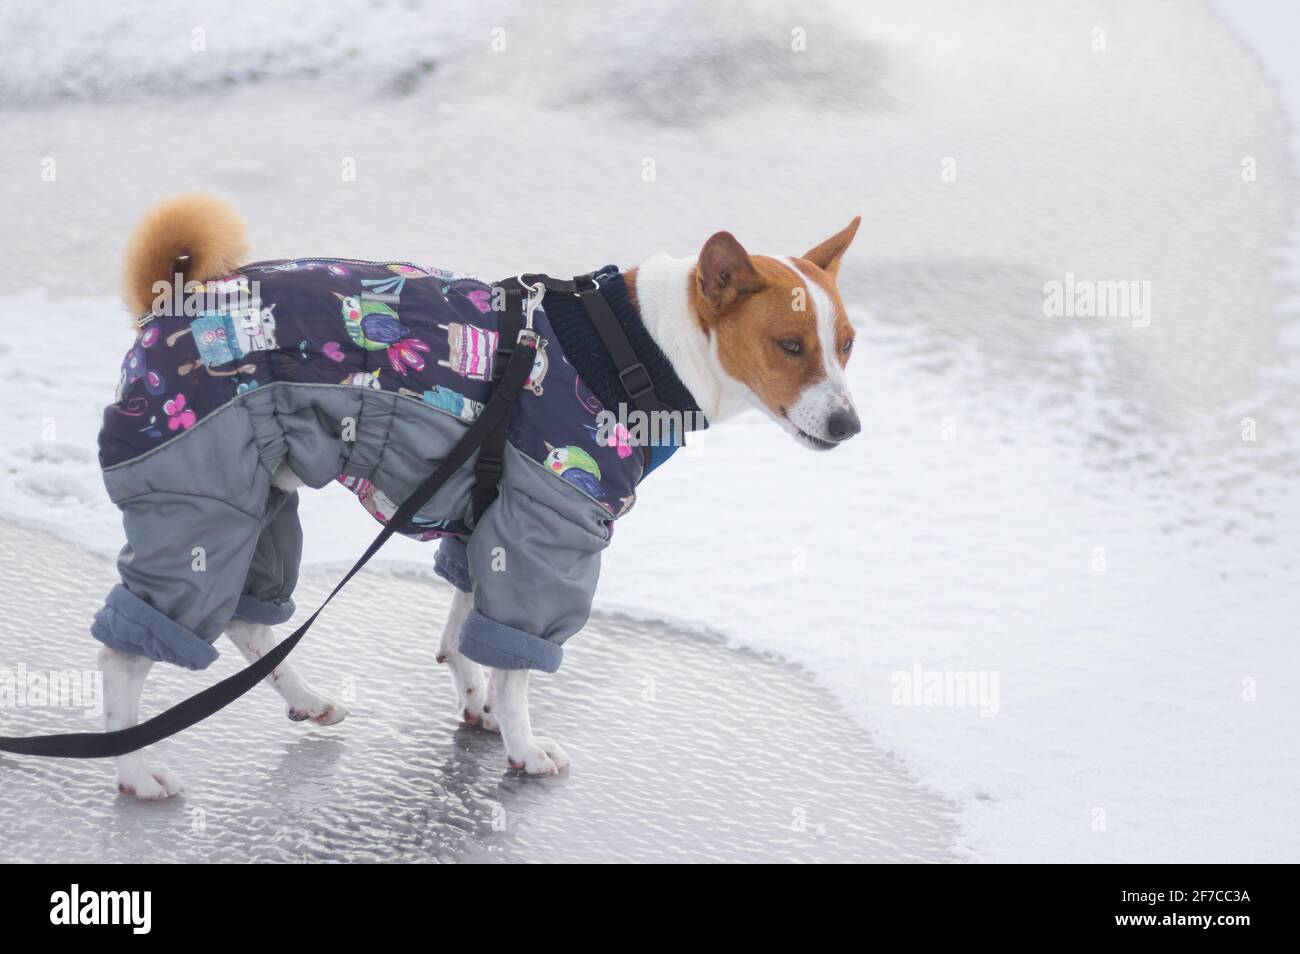 DNIPRO, UKRAINE - 08. februar 2020:Porträt des basenji-Hundes im Wintermantel, der auf eisbedecktem Boden steht und Unmut auf einem Muzz zeigt Stockfoto